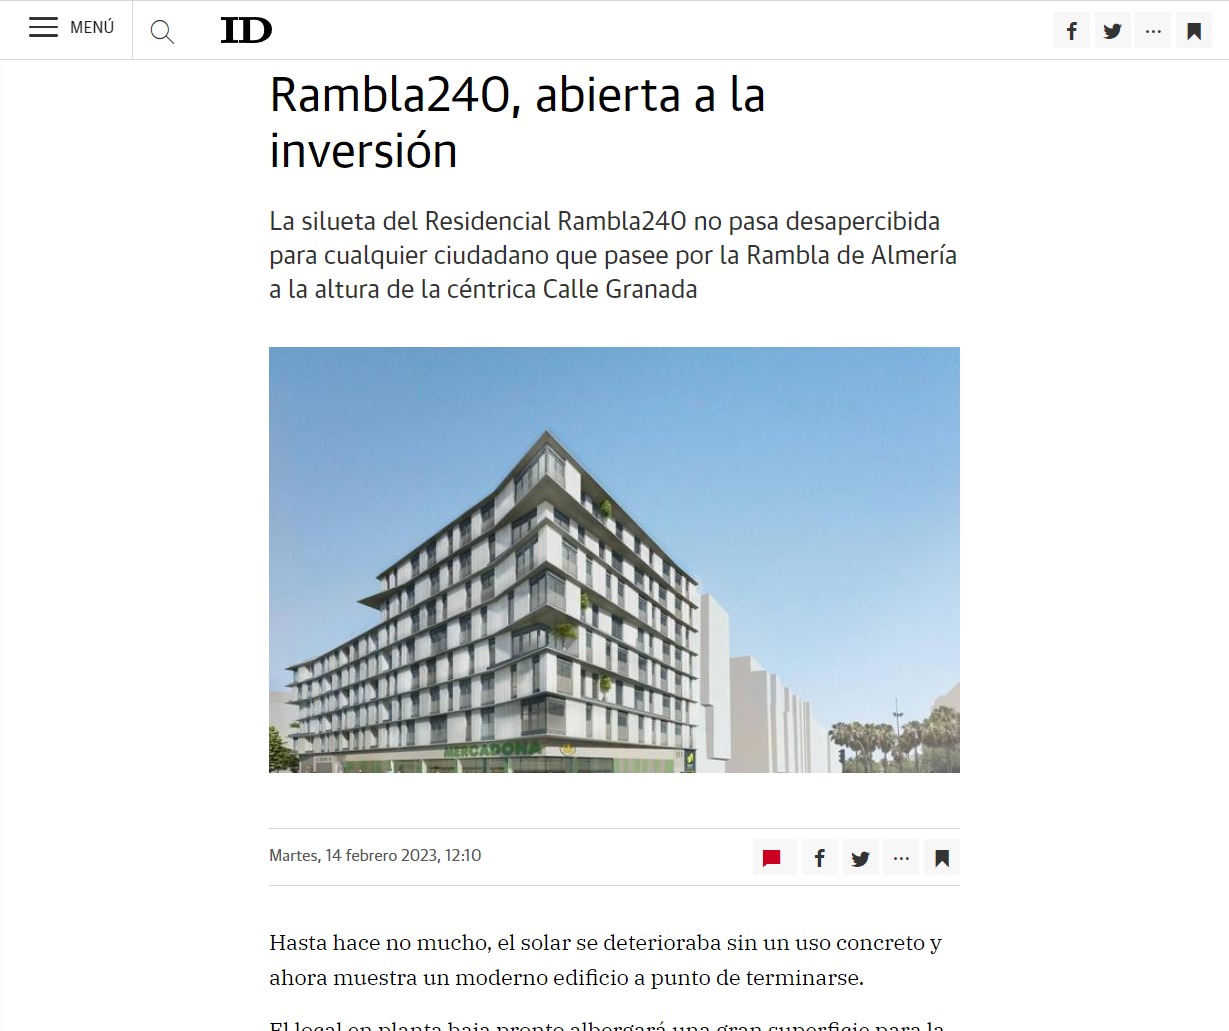 Rambla240, abierta a la inversión